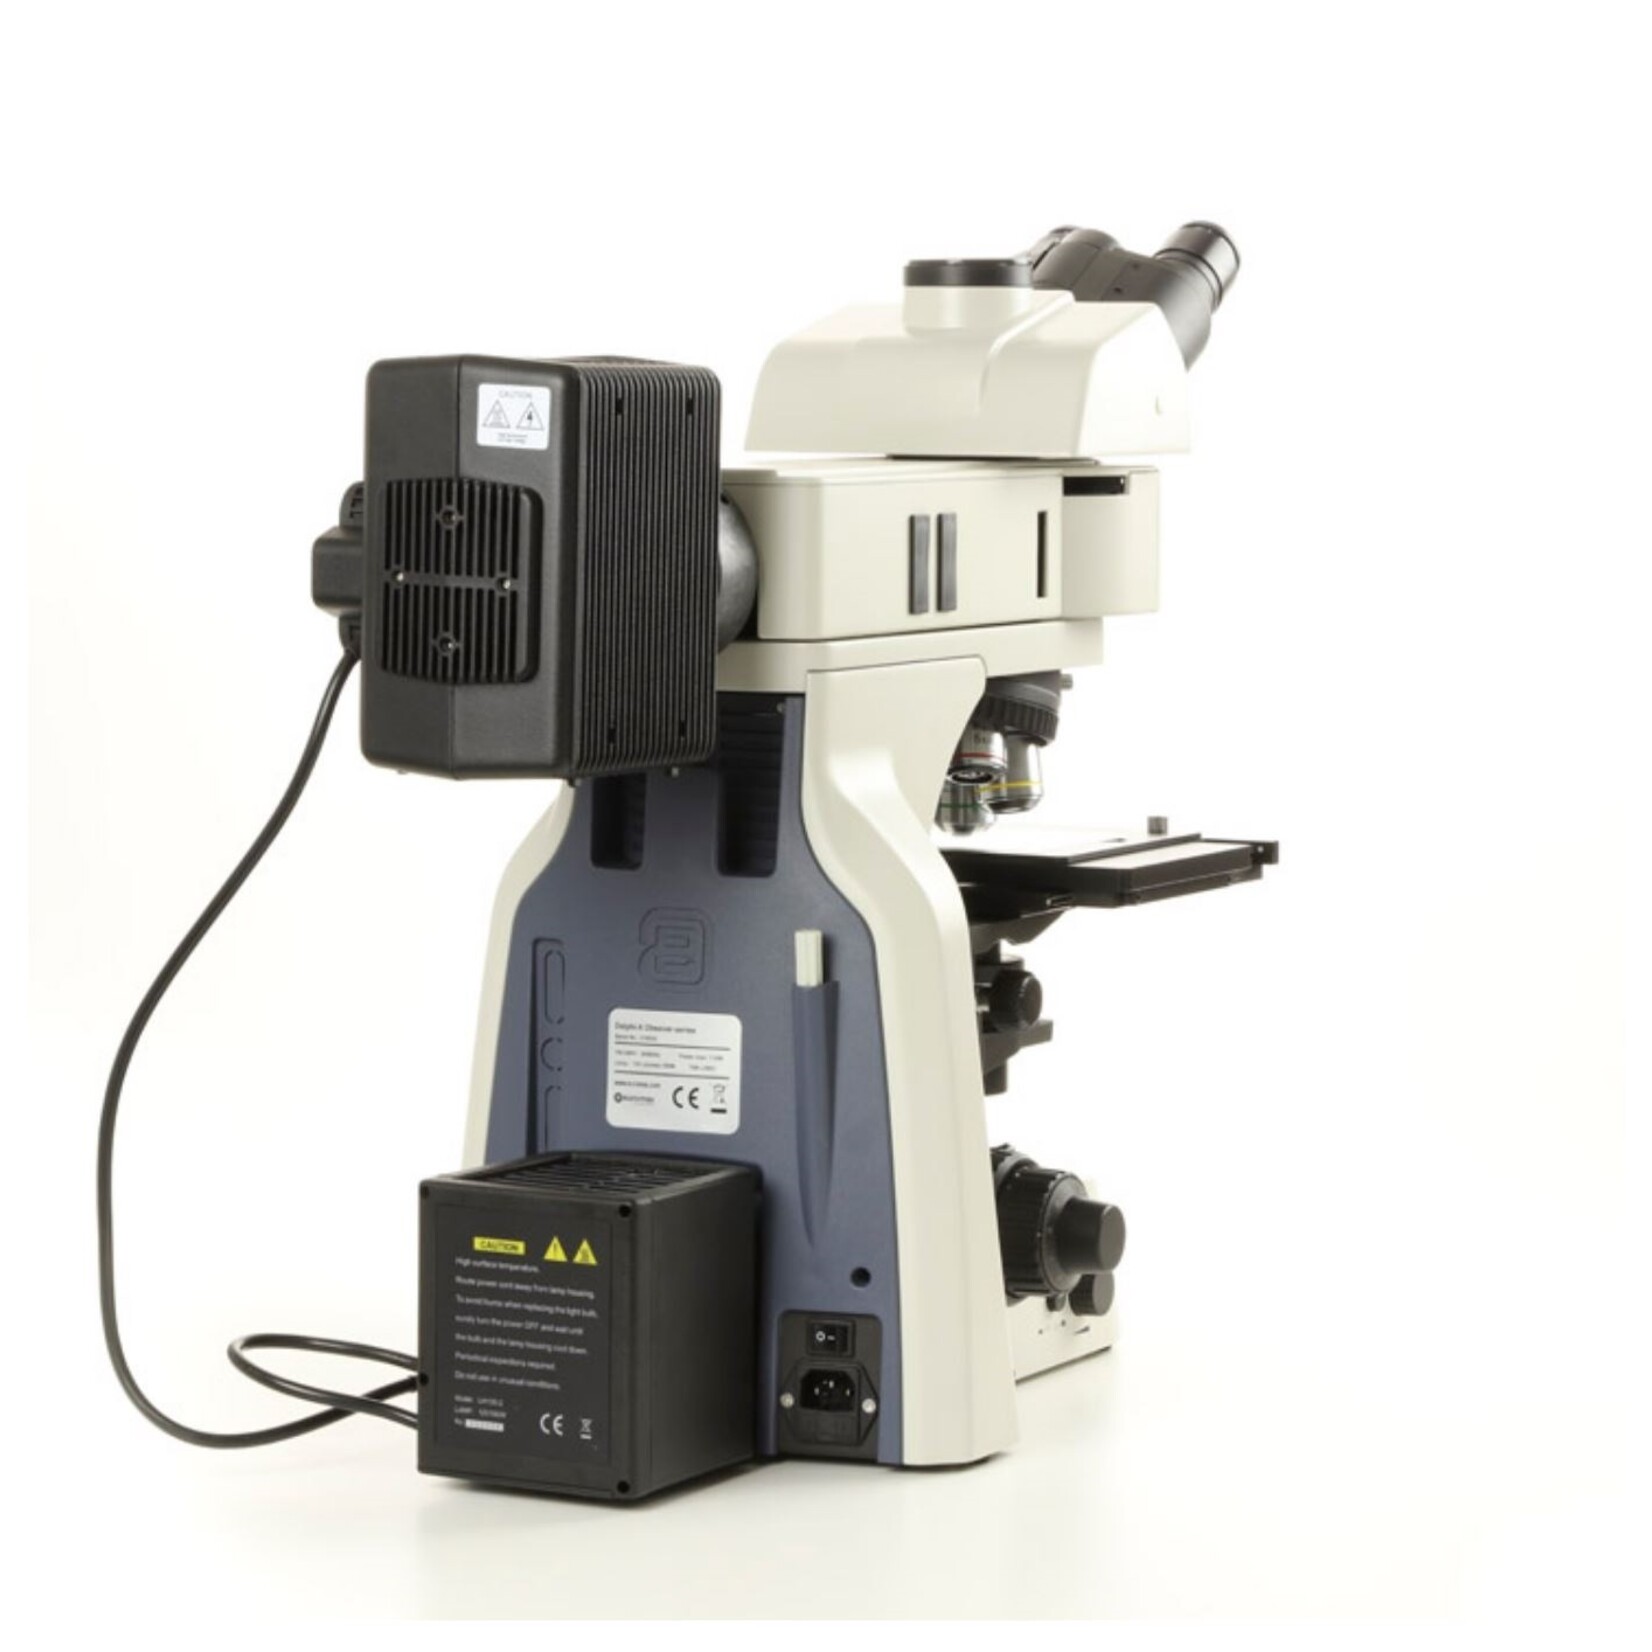 Microscopio Delphi para ensayos de materiales metalúrgicos